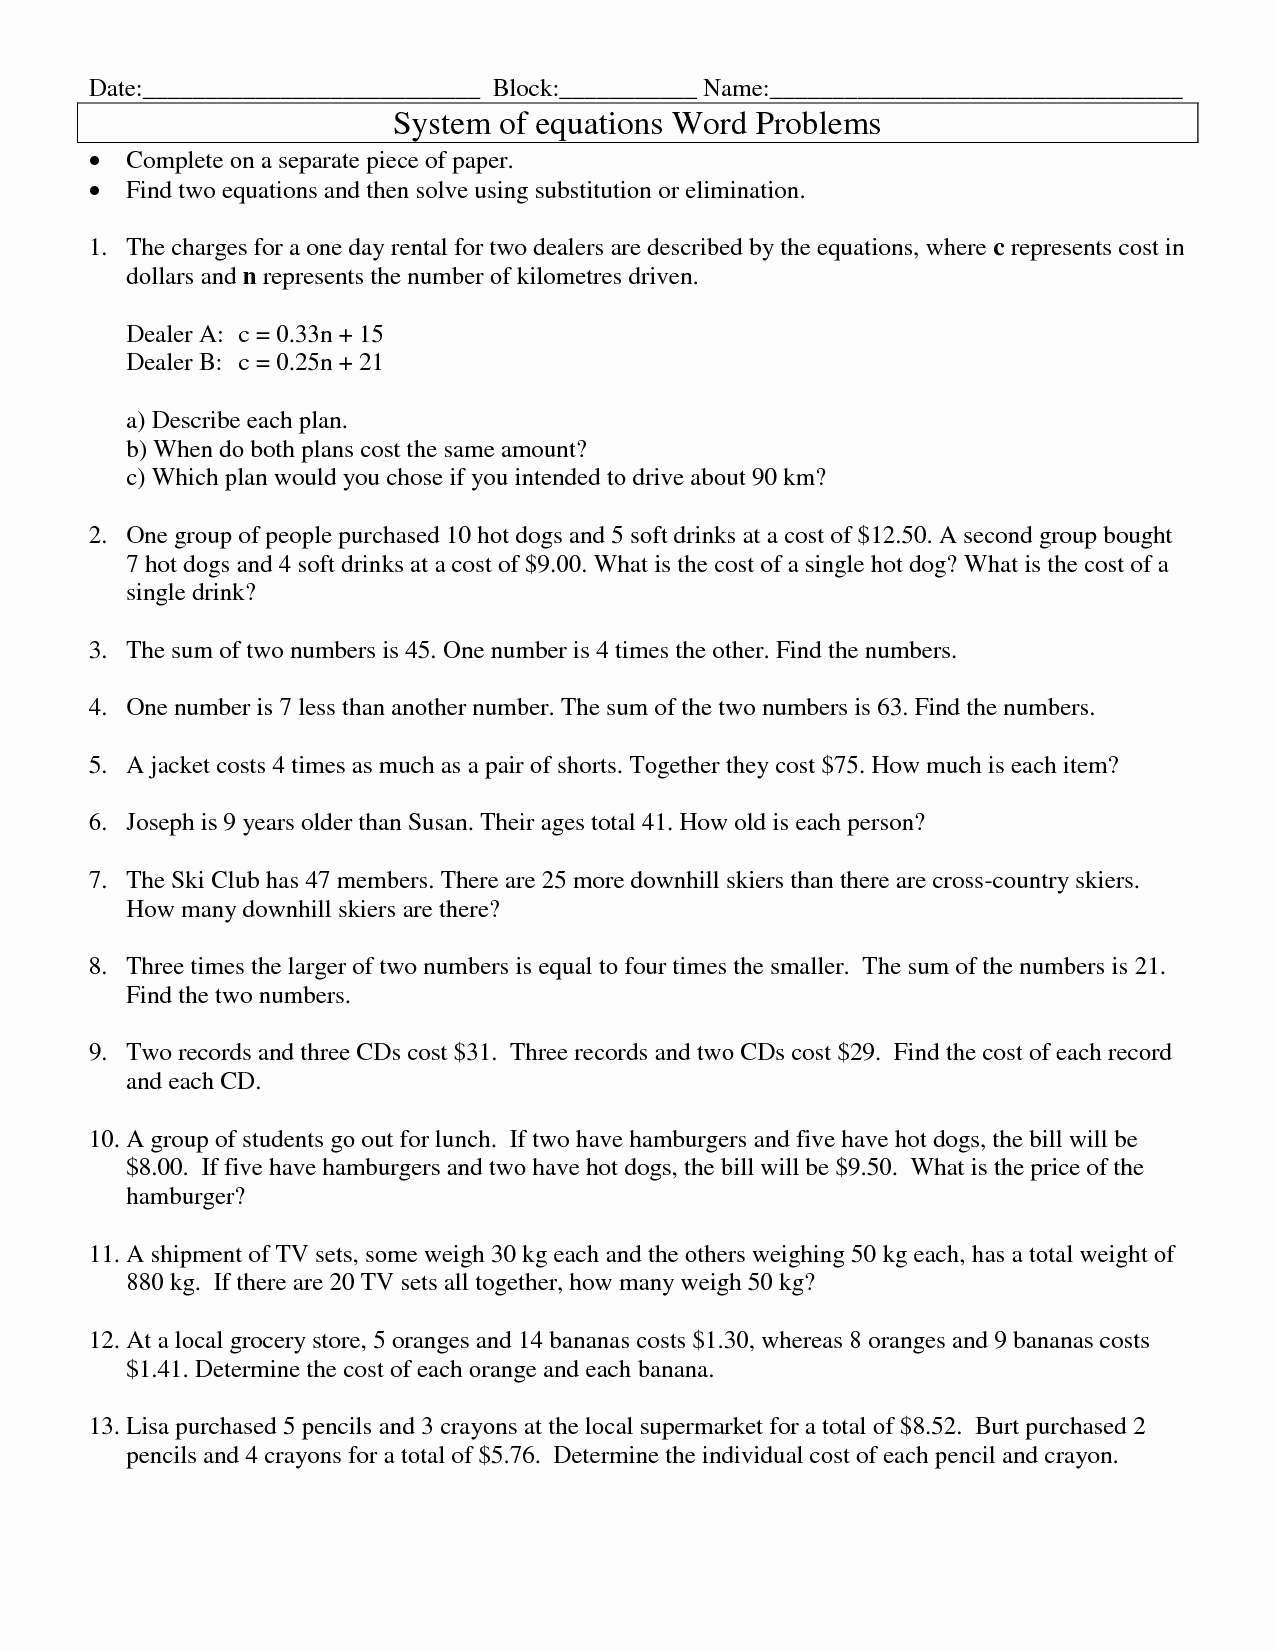 Linear Inequalities Word Problems Worksheet Elegant 17 Best Of Linear Function Word Problems Worksheet